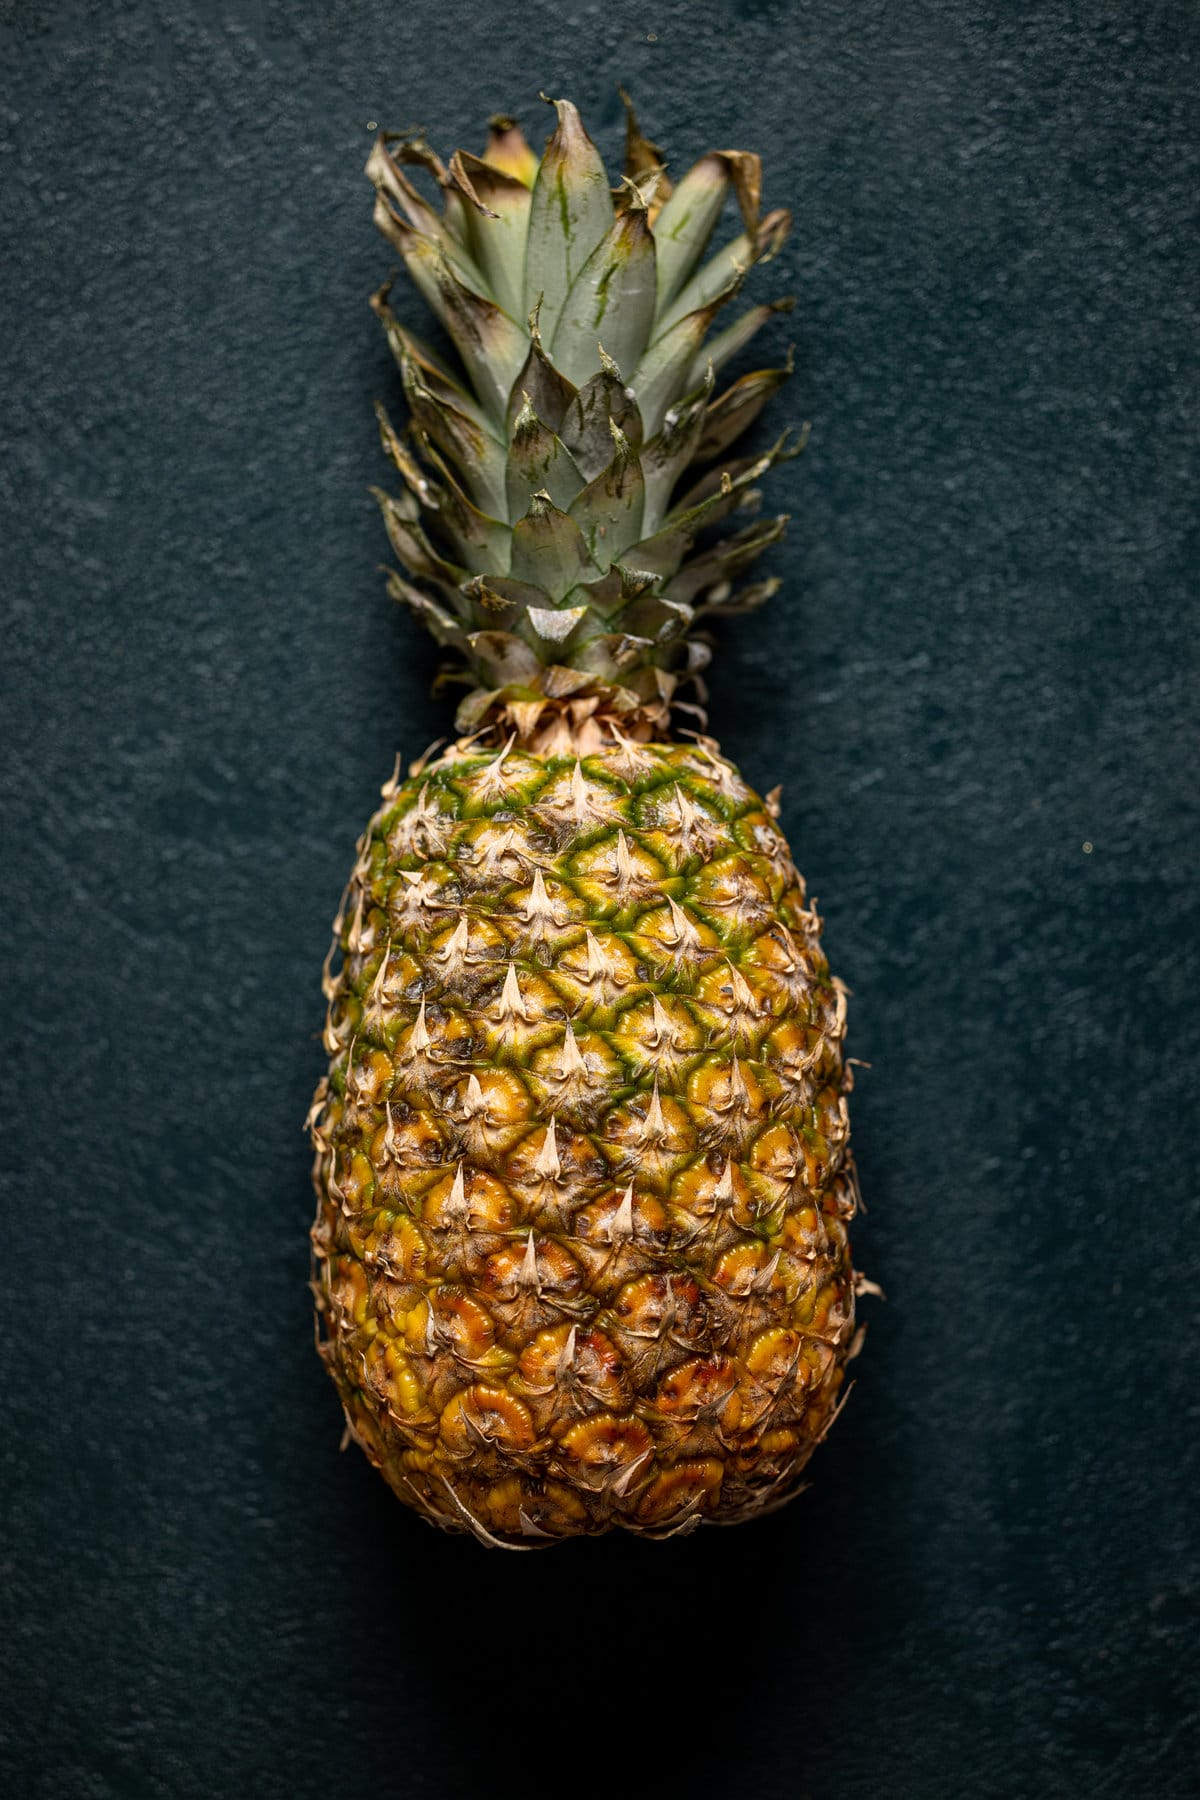 Pineapple Jalapeño Lime Mocktail